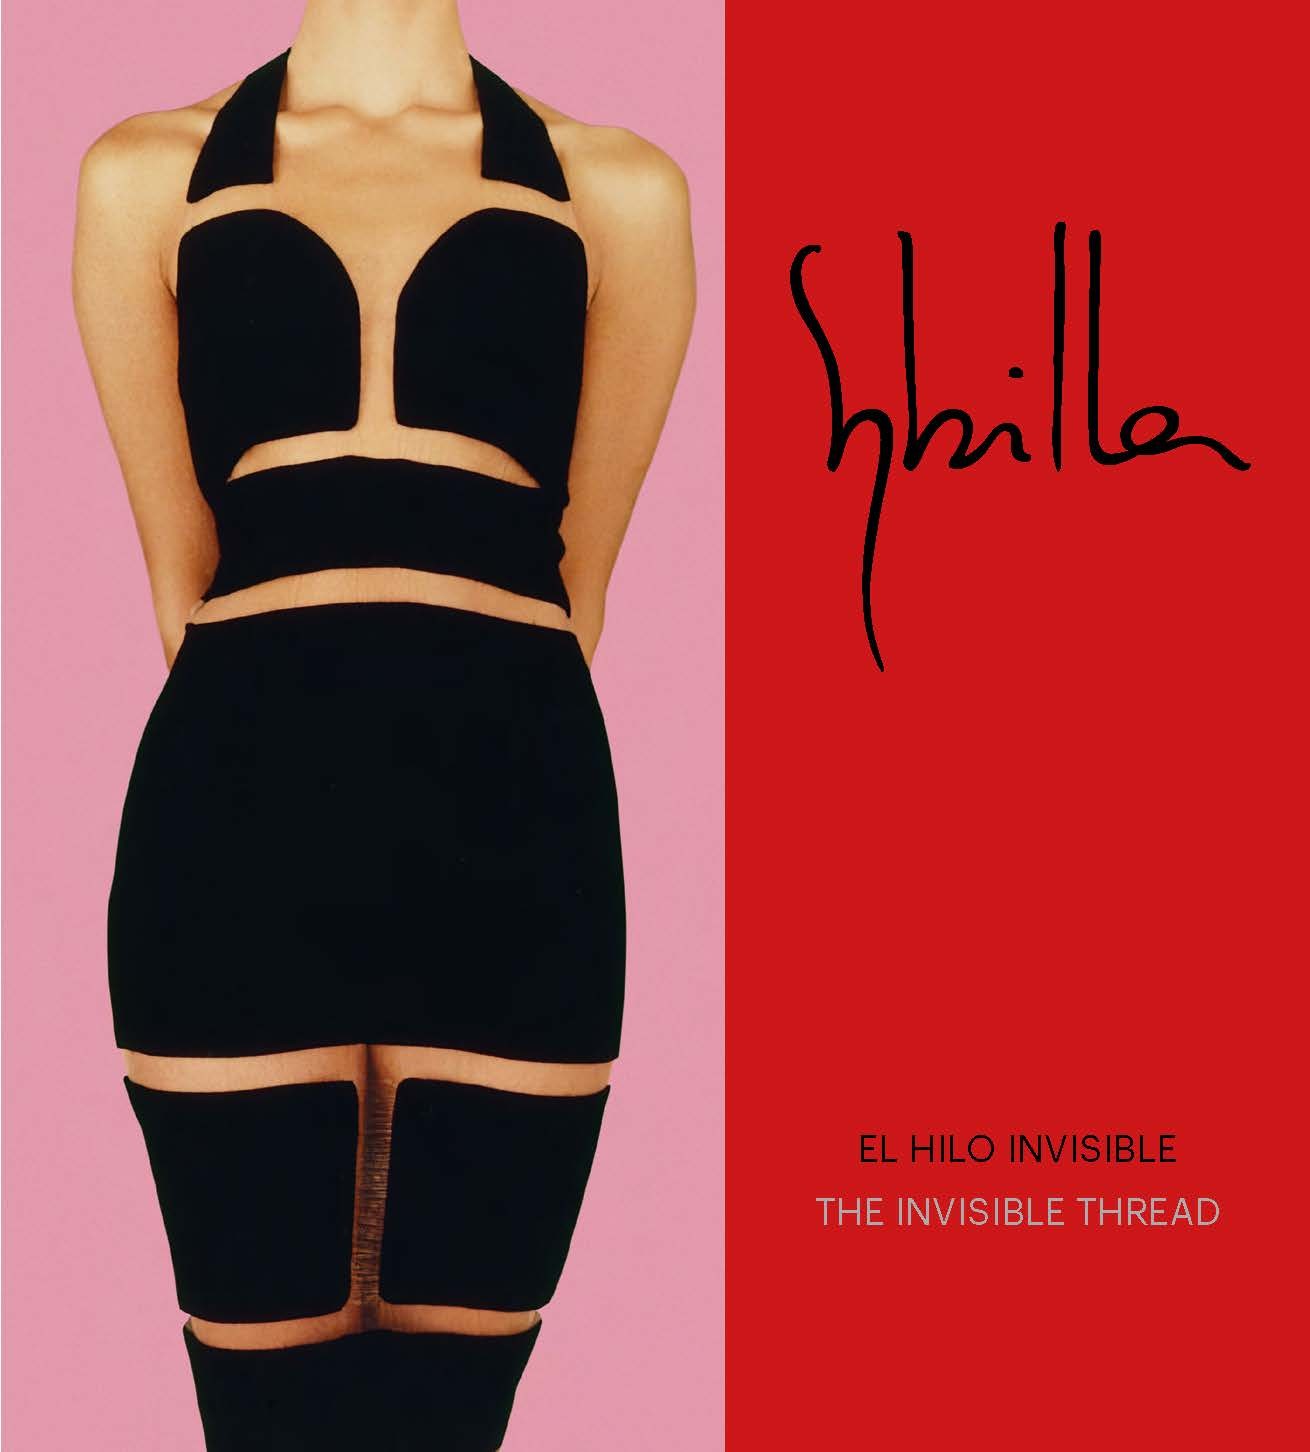 Sybilla. El Hilo invisible/ The Invisible Thread